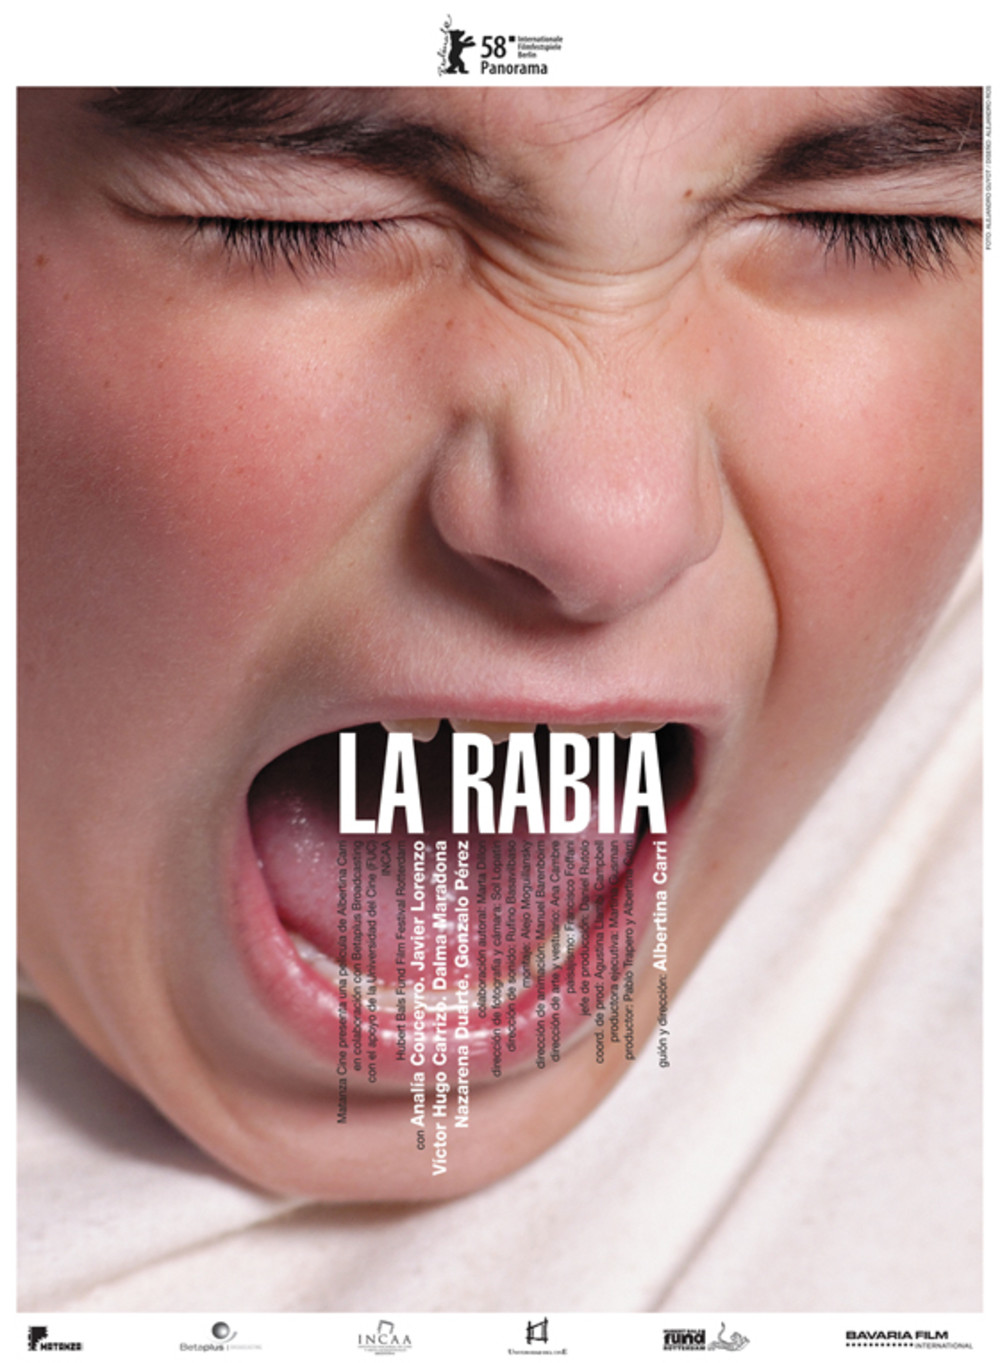 La rabia (2008) Screenshot 1